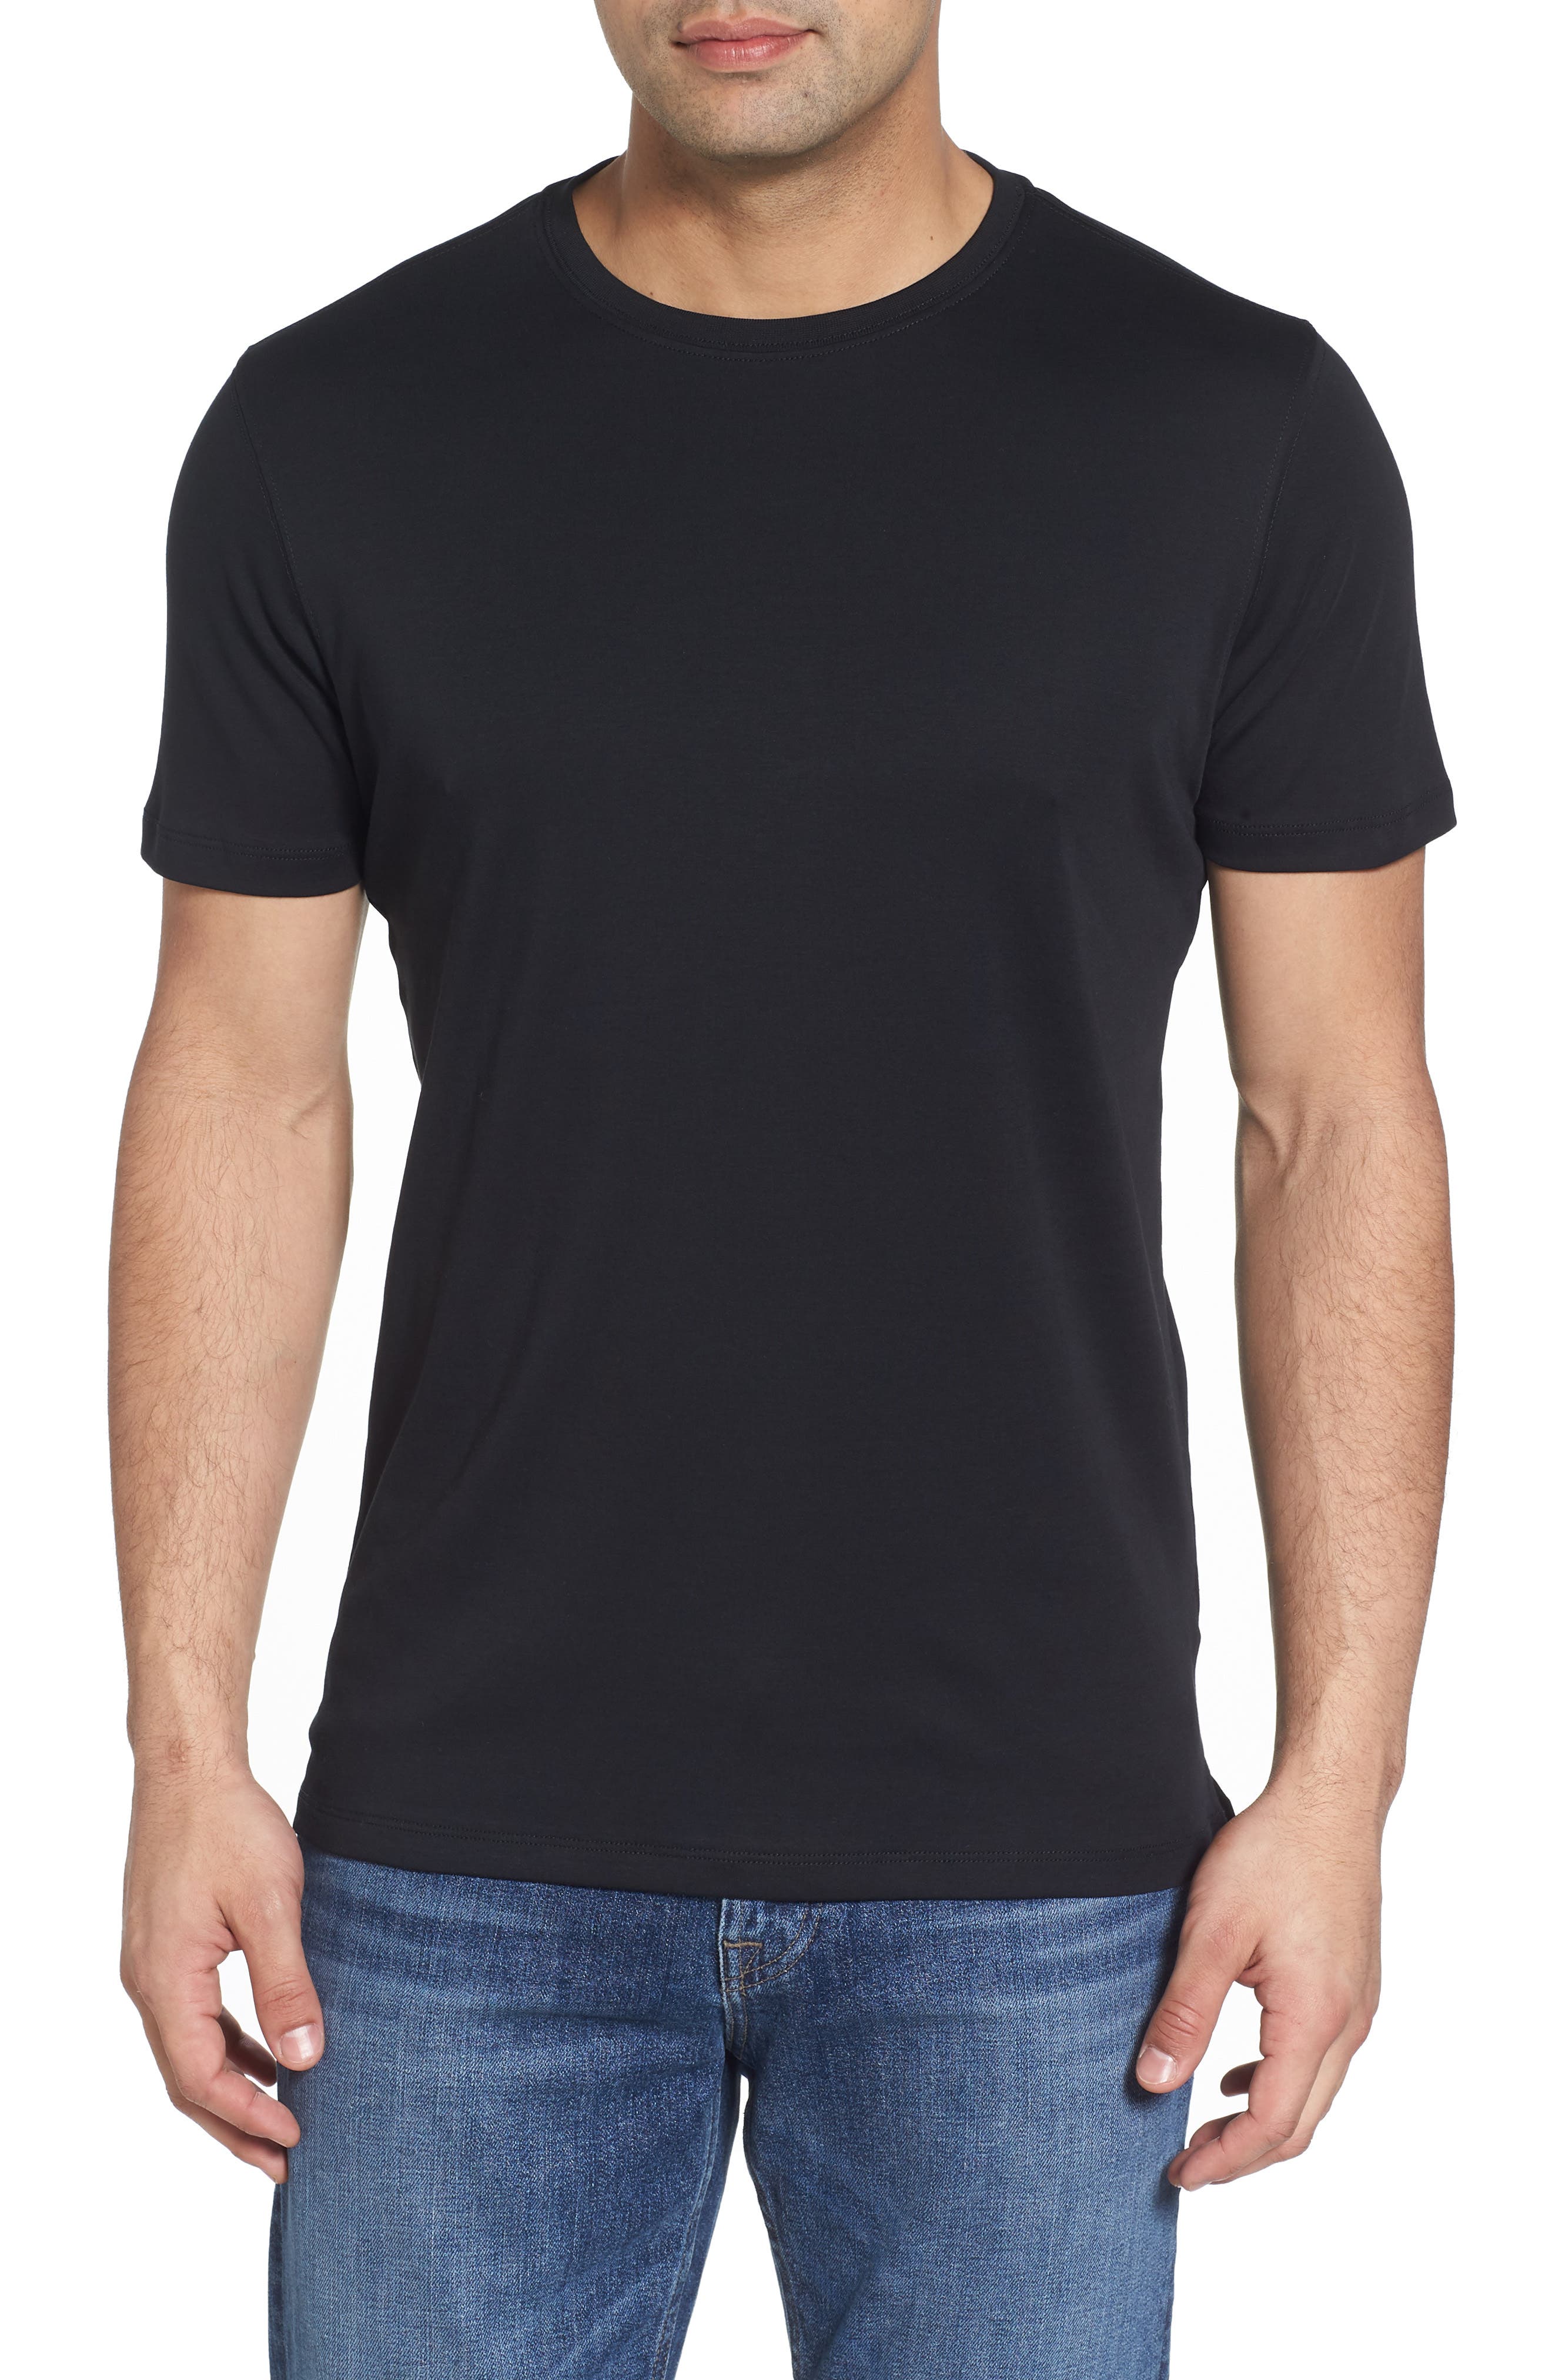 discount 81% Gray M Southern T-shirt MEN FASHION Shirts & T-shirts Combined 